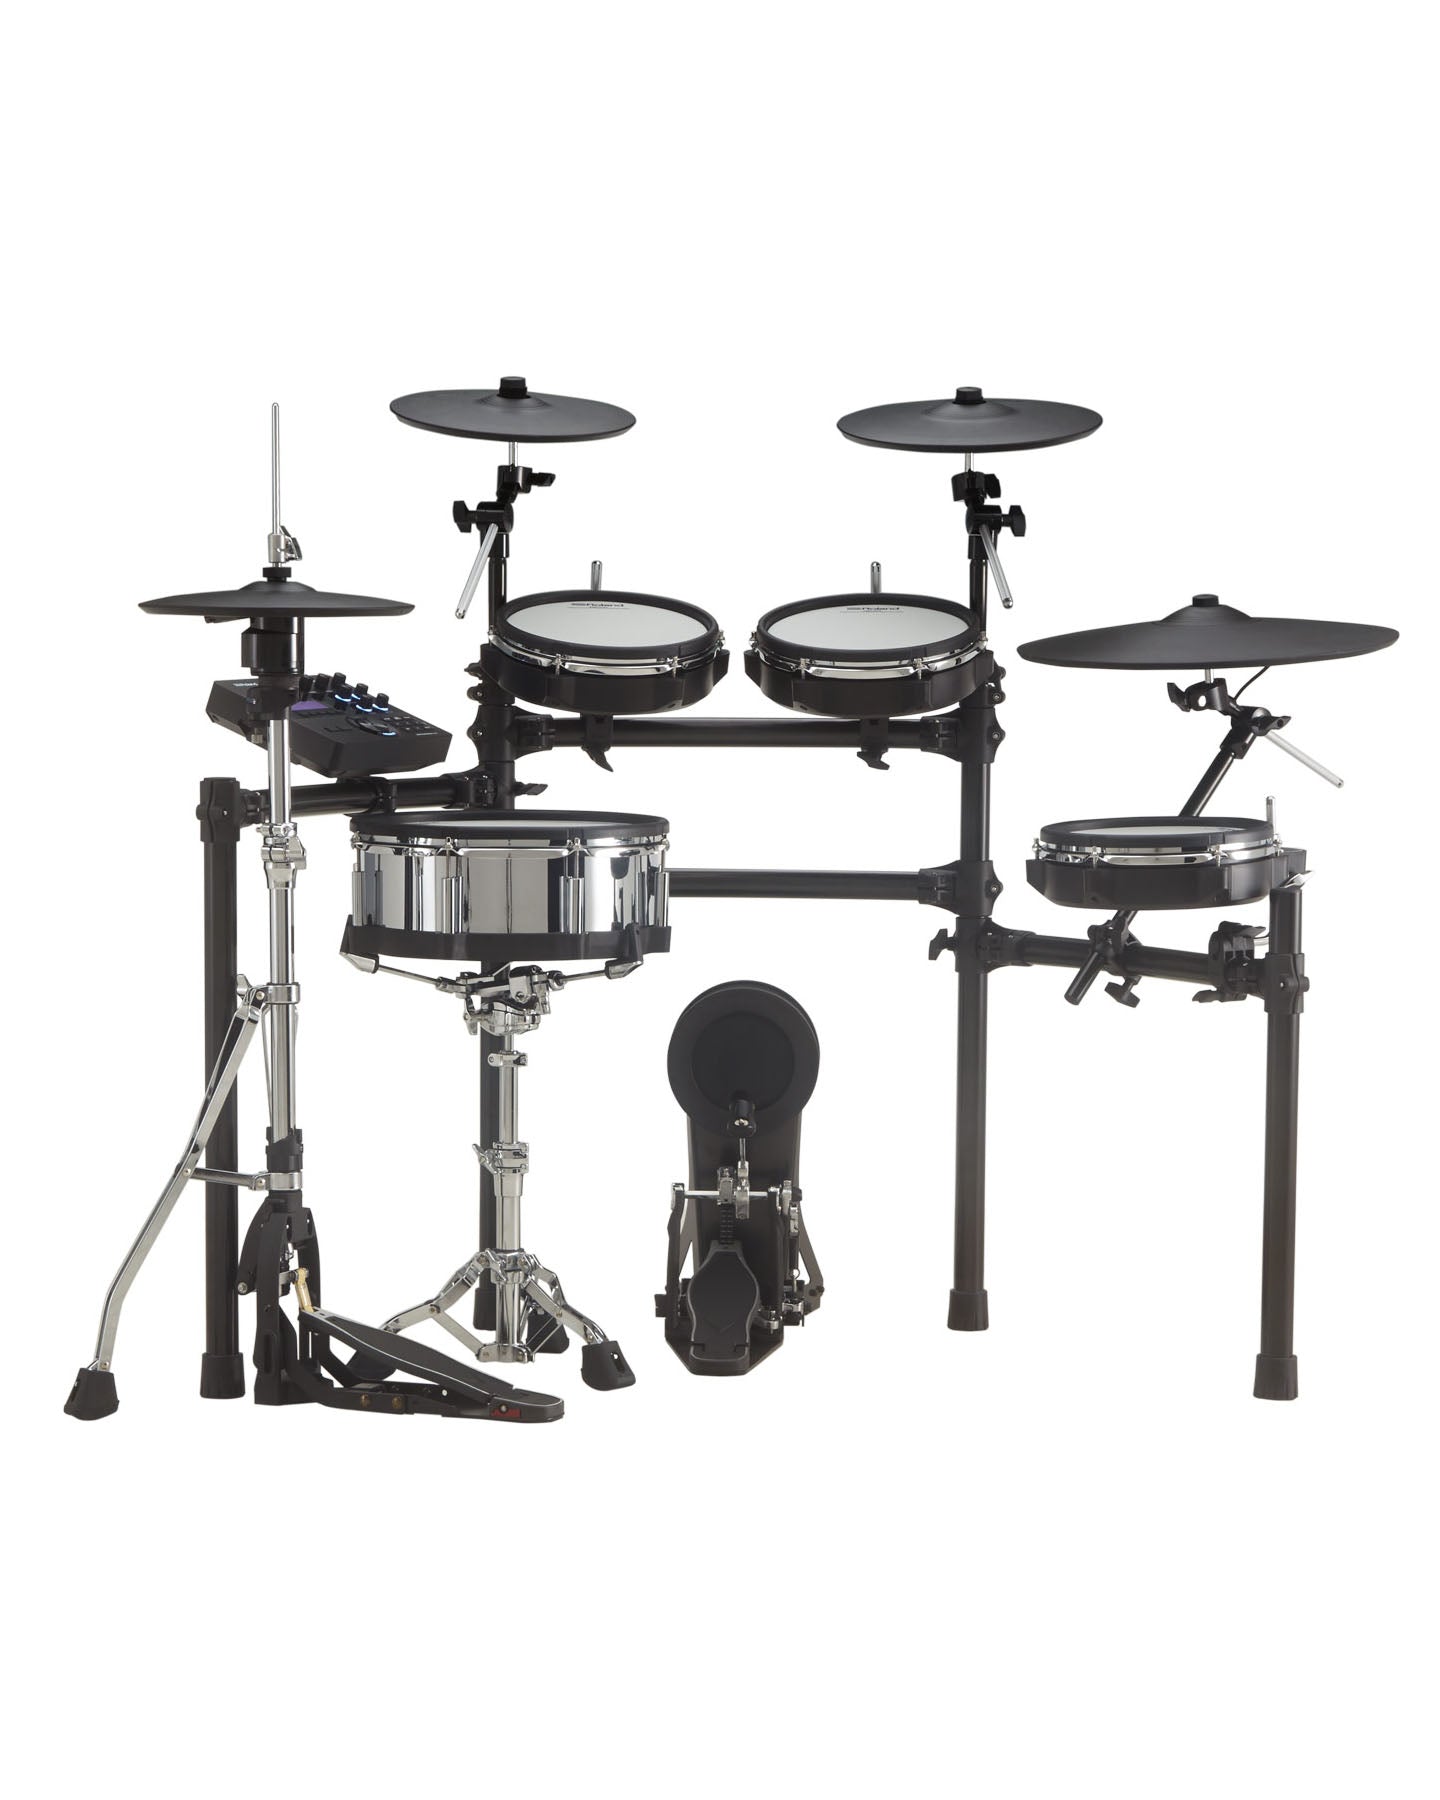 TD-27KV V-Drums Electronic Drum Kit